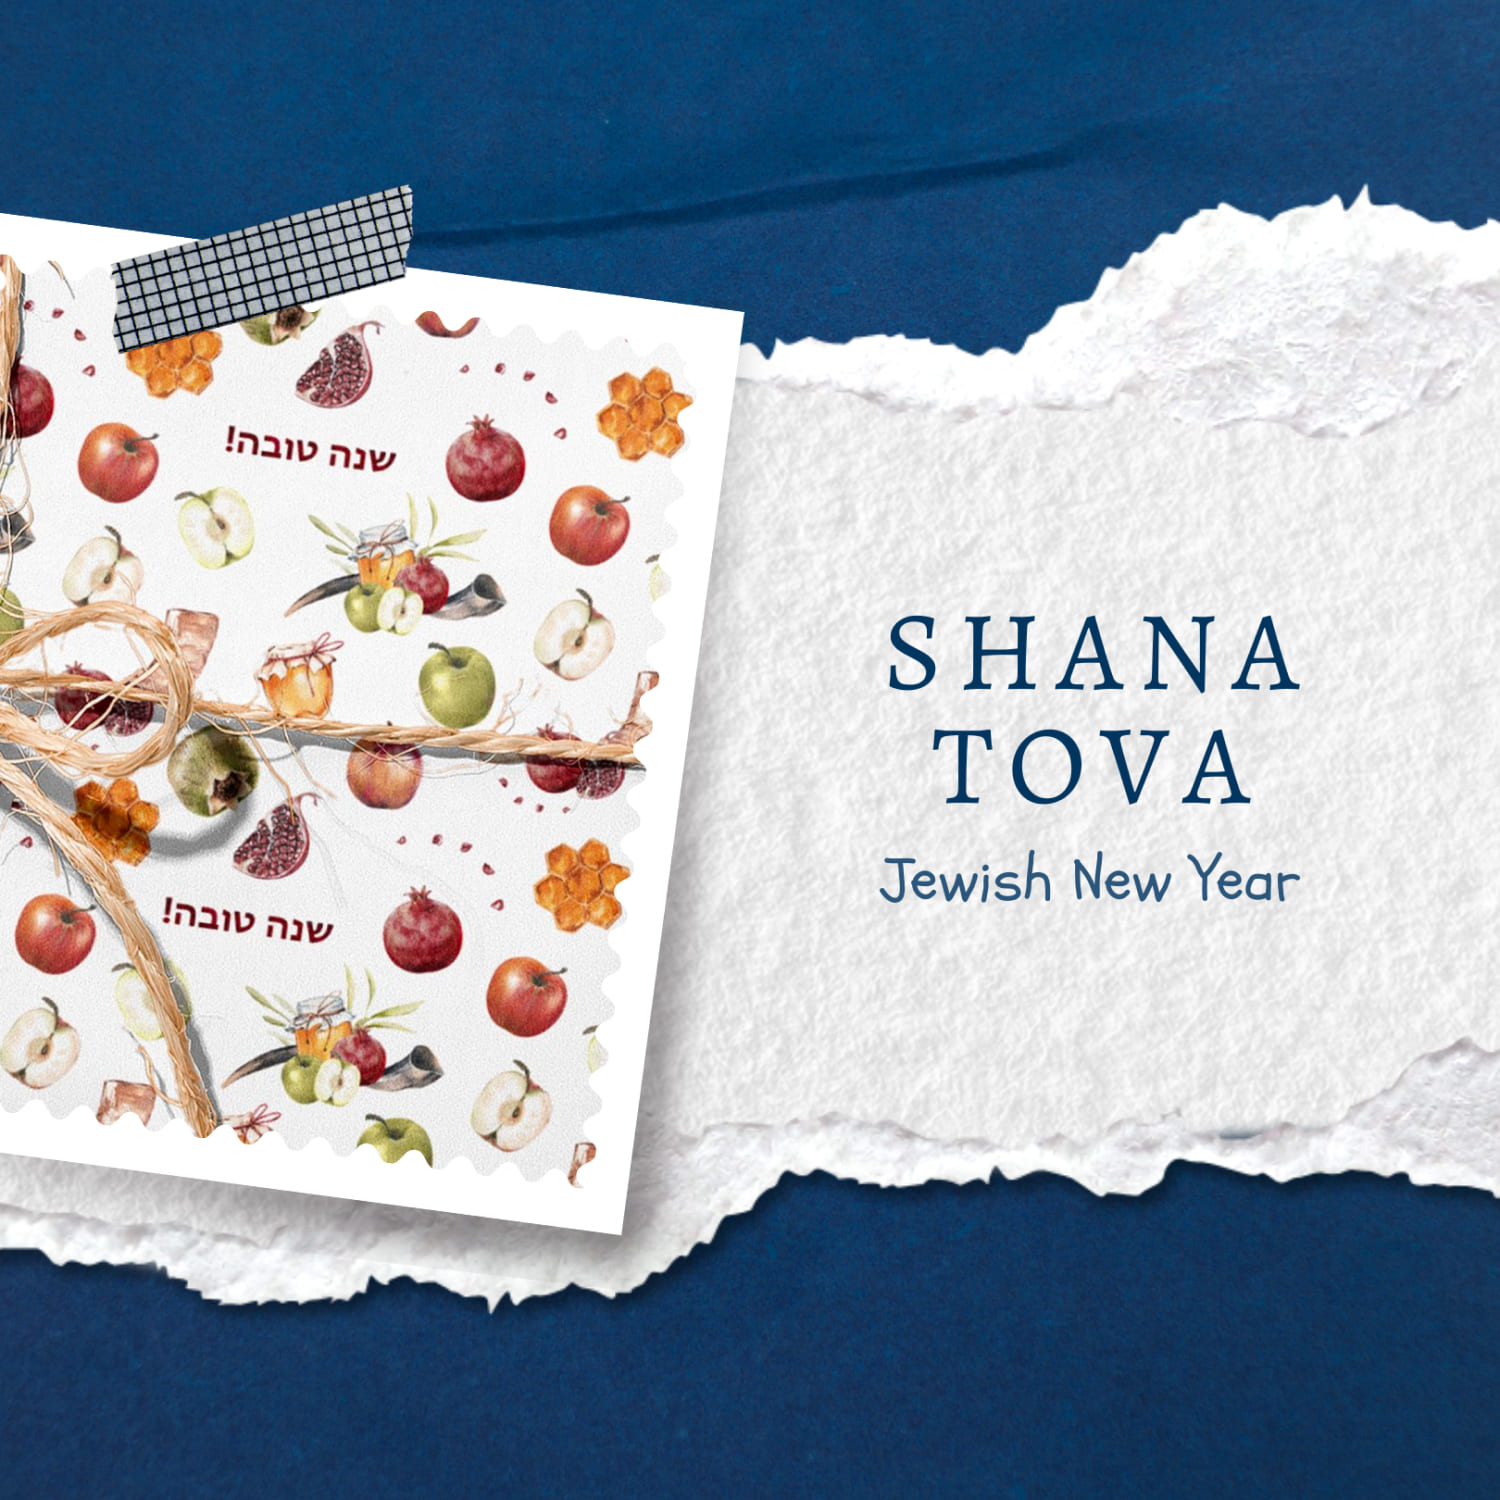 SHANA TOVA Jewish New Year.